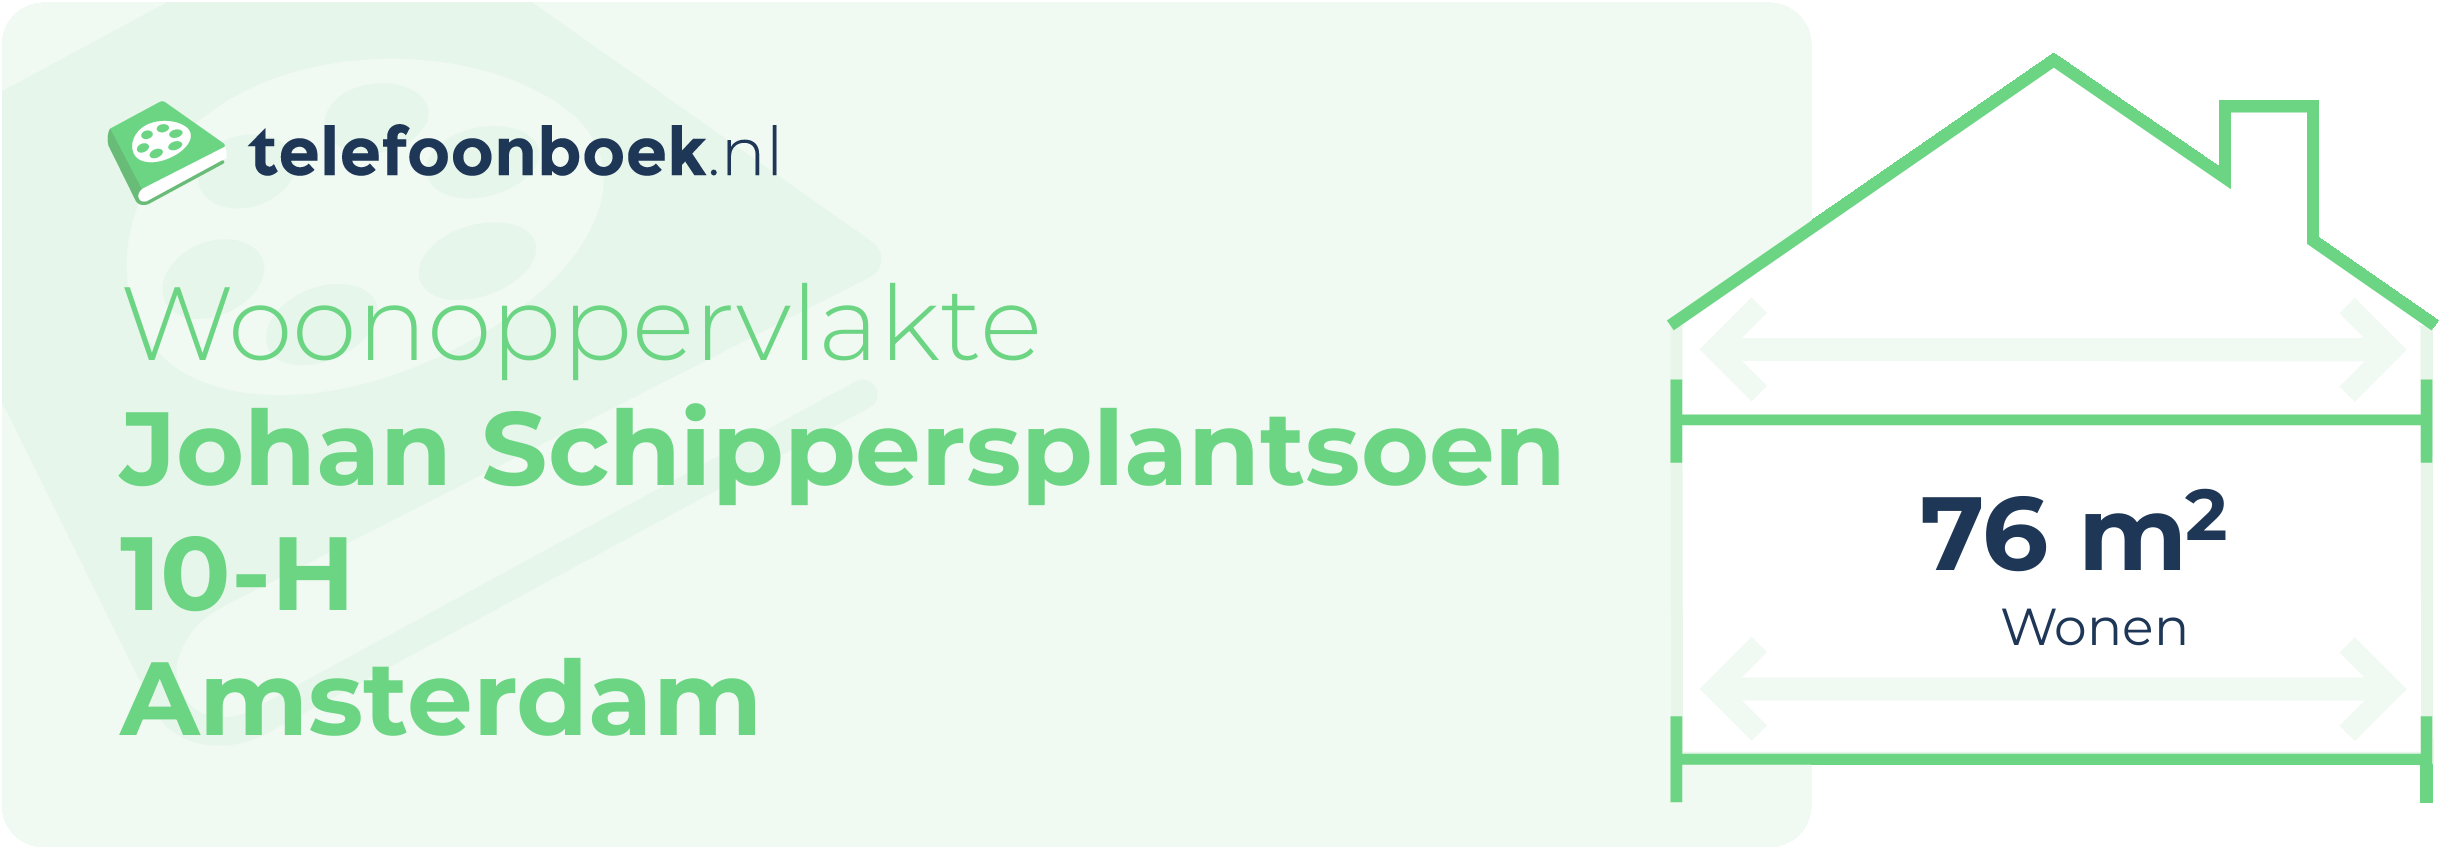 Woonoppervlakte Johan Schippersplantsoen 10-H Amsterdam